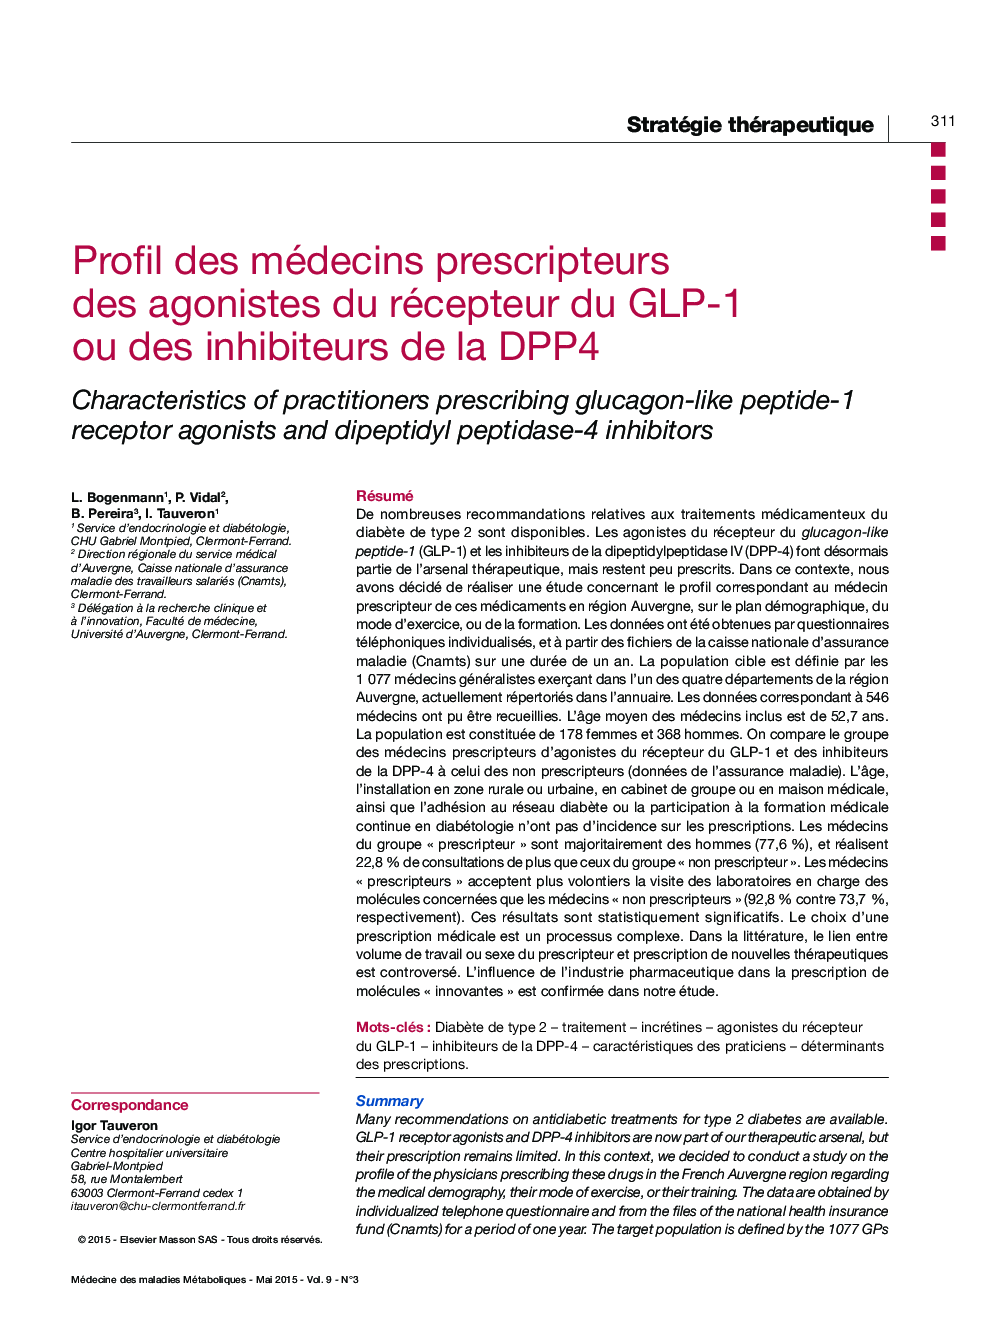 Profil des médecins prescripteurs des agonistes du récepteur du GLP-1 ou des inhibiteurs de la DPP4